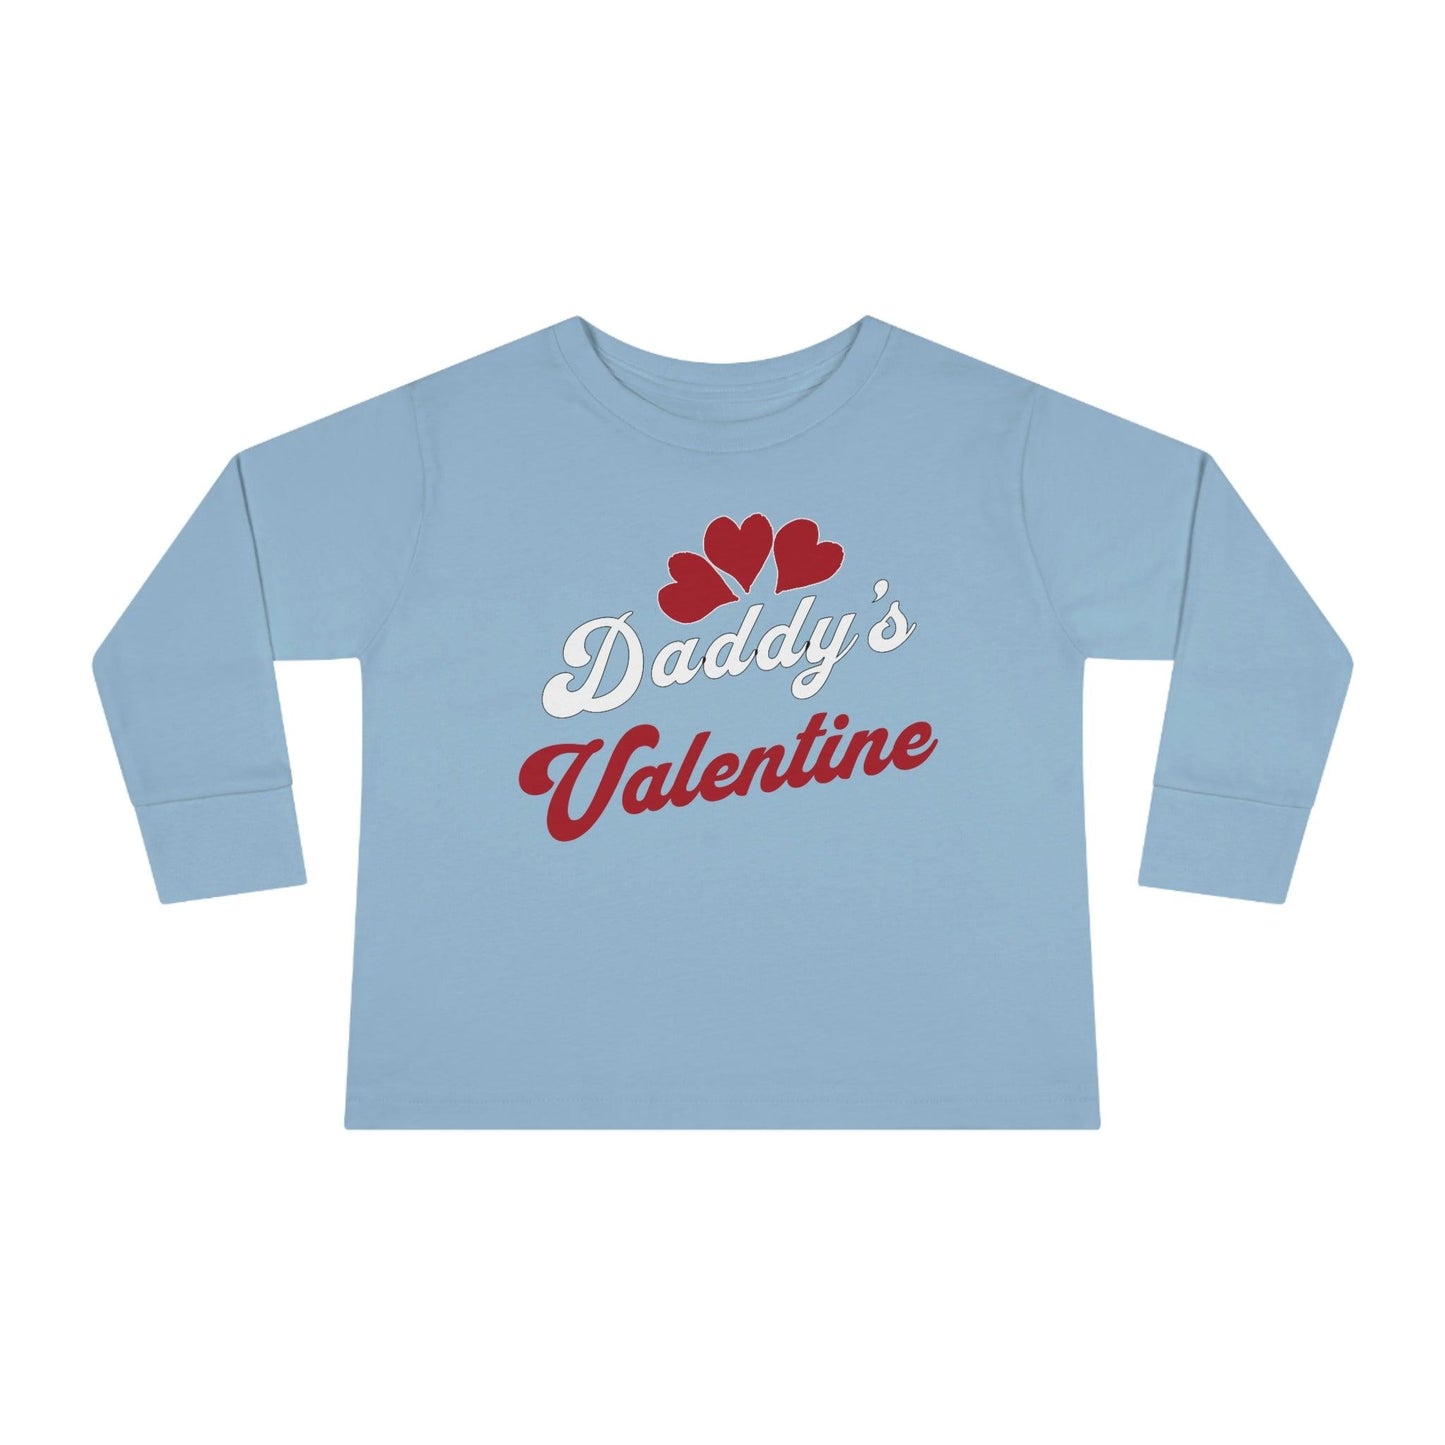 Kids Valentine shirt - Toddler Valentine Tee